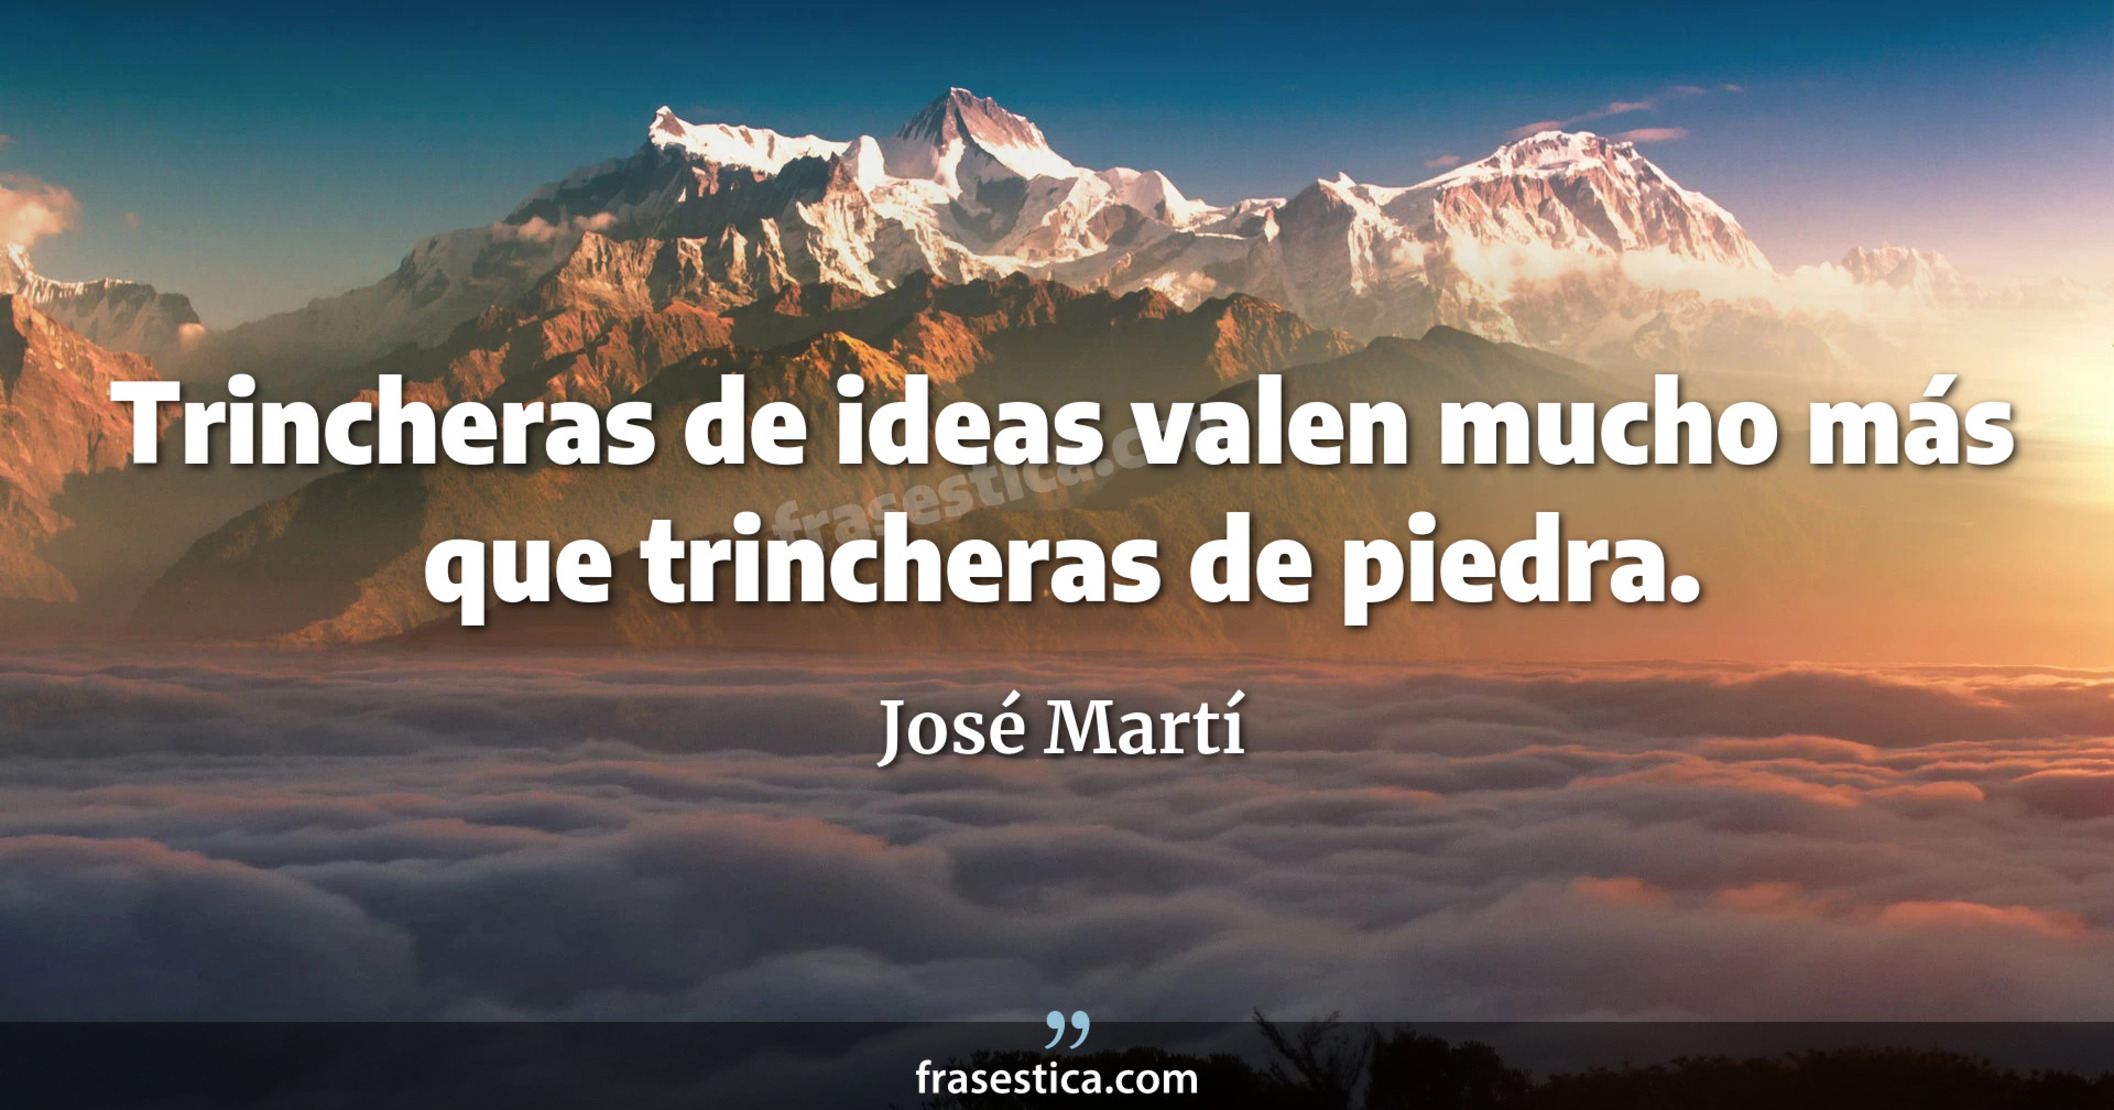 Trincheras de ideas valen mucho más que trincheras de piedra. - José Martí